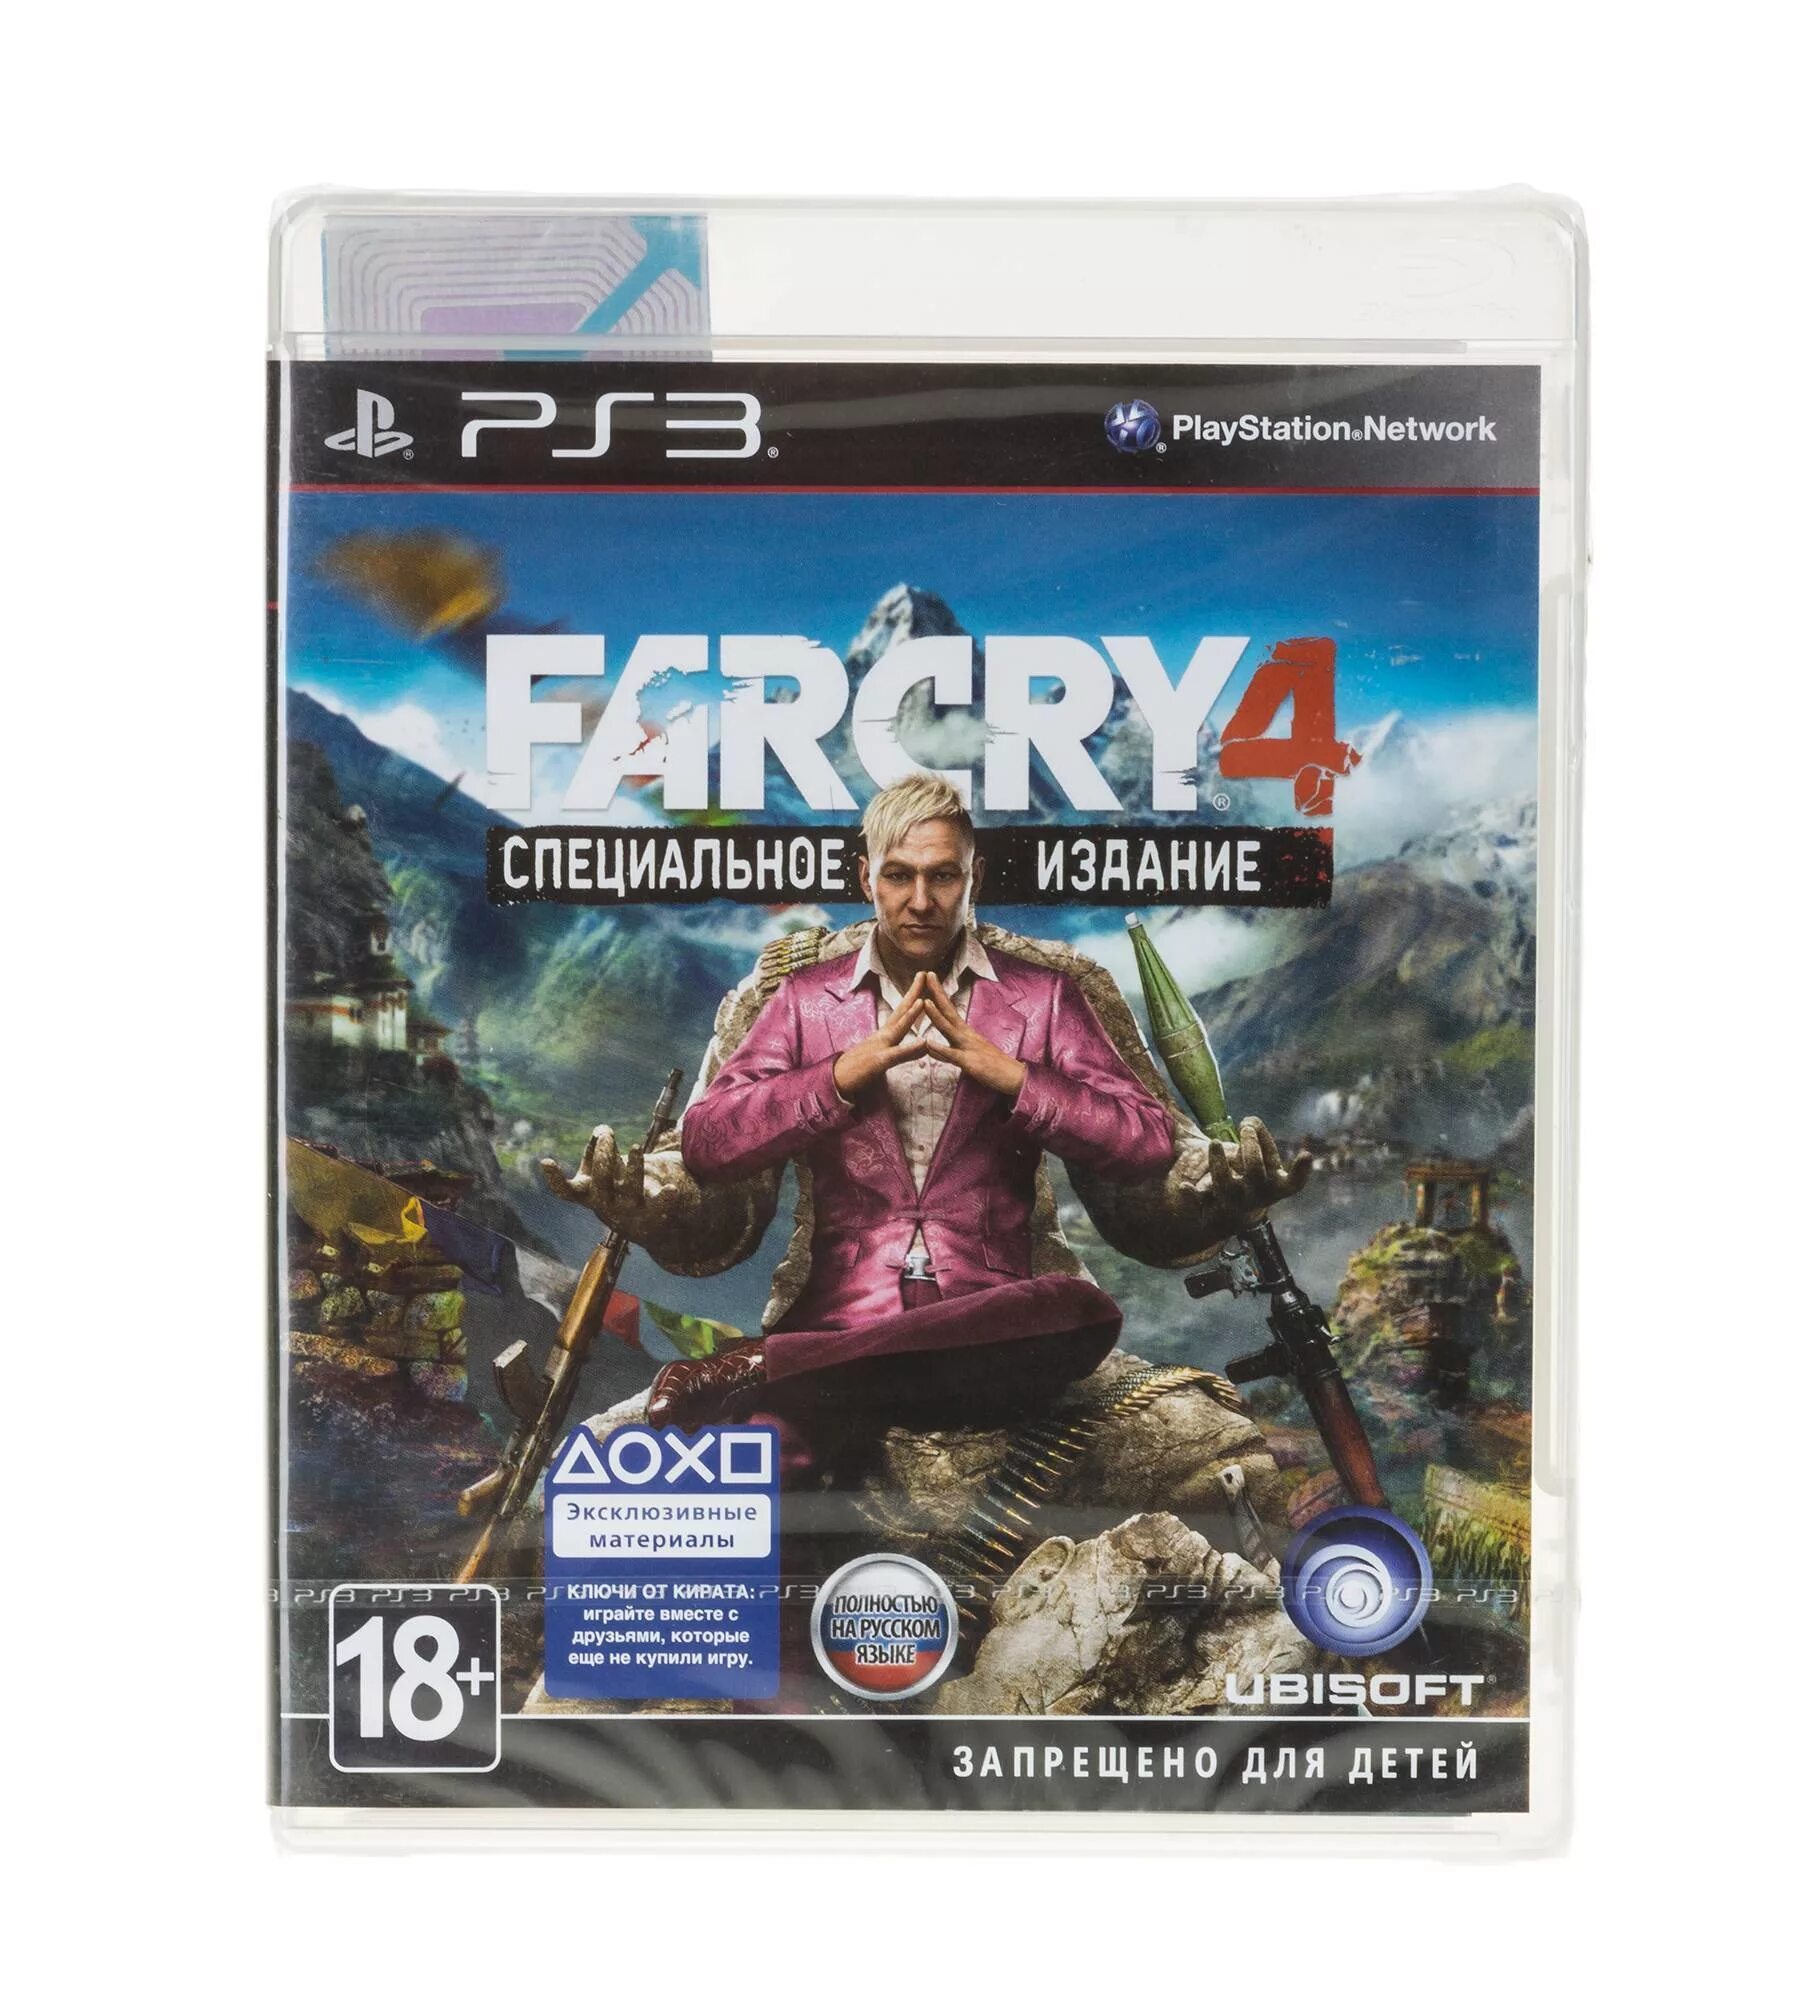 Диск пс4 far Cry 4. Far Cry 4 специальное издание ps3. Far Cry 3 [ps3, русская версия]ps3. Far Cry 6 на пс3 диск. Купить диск на пс 3